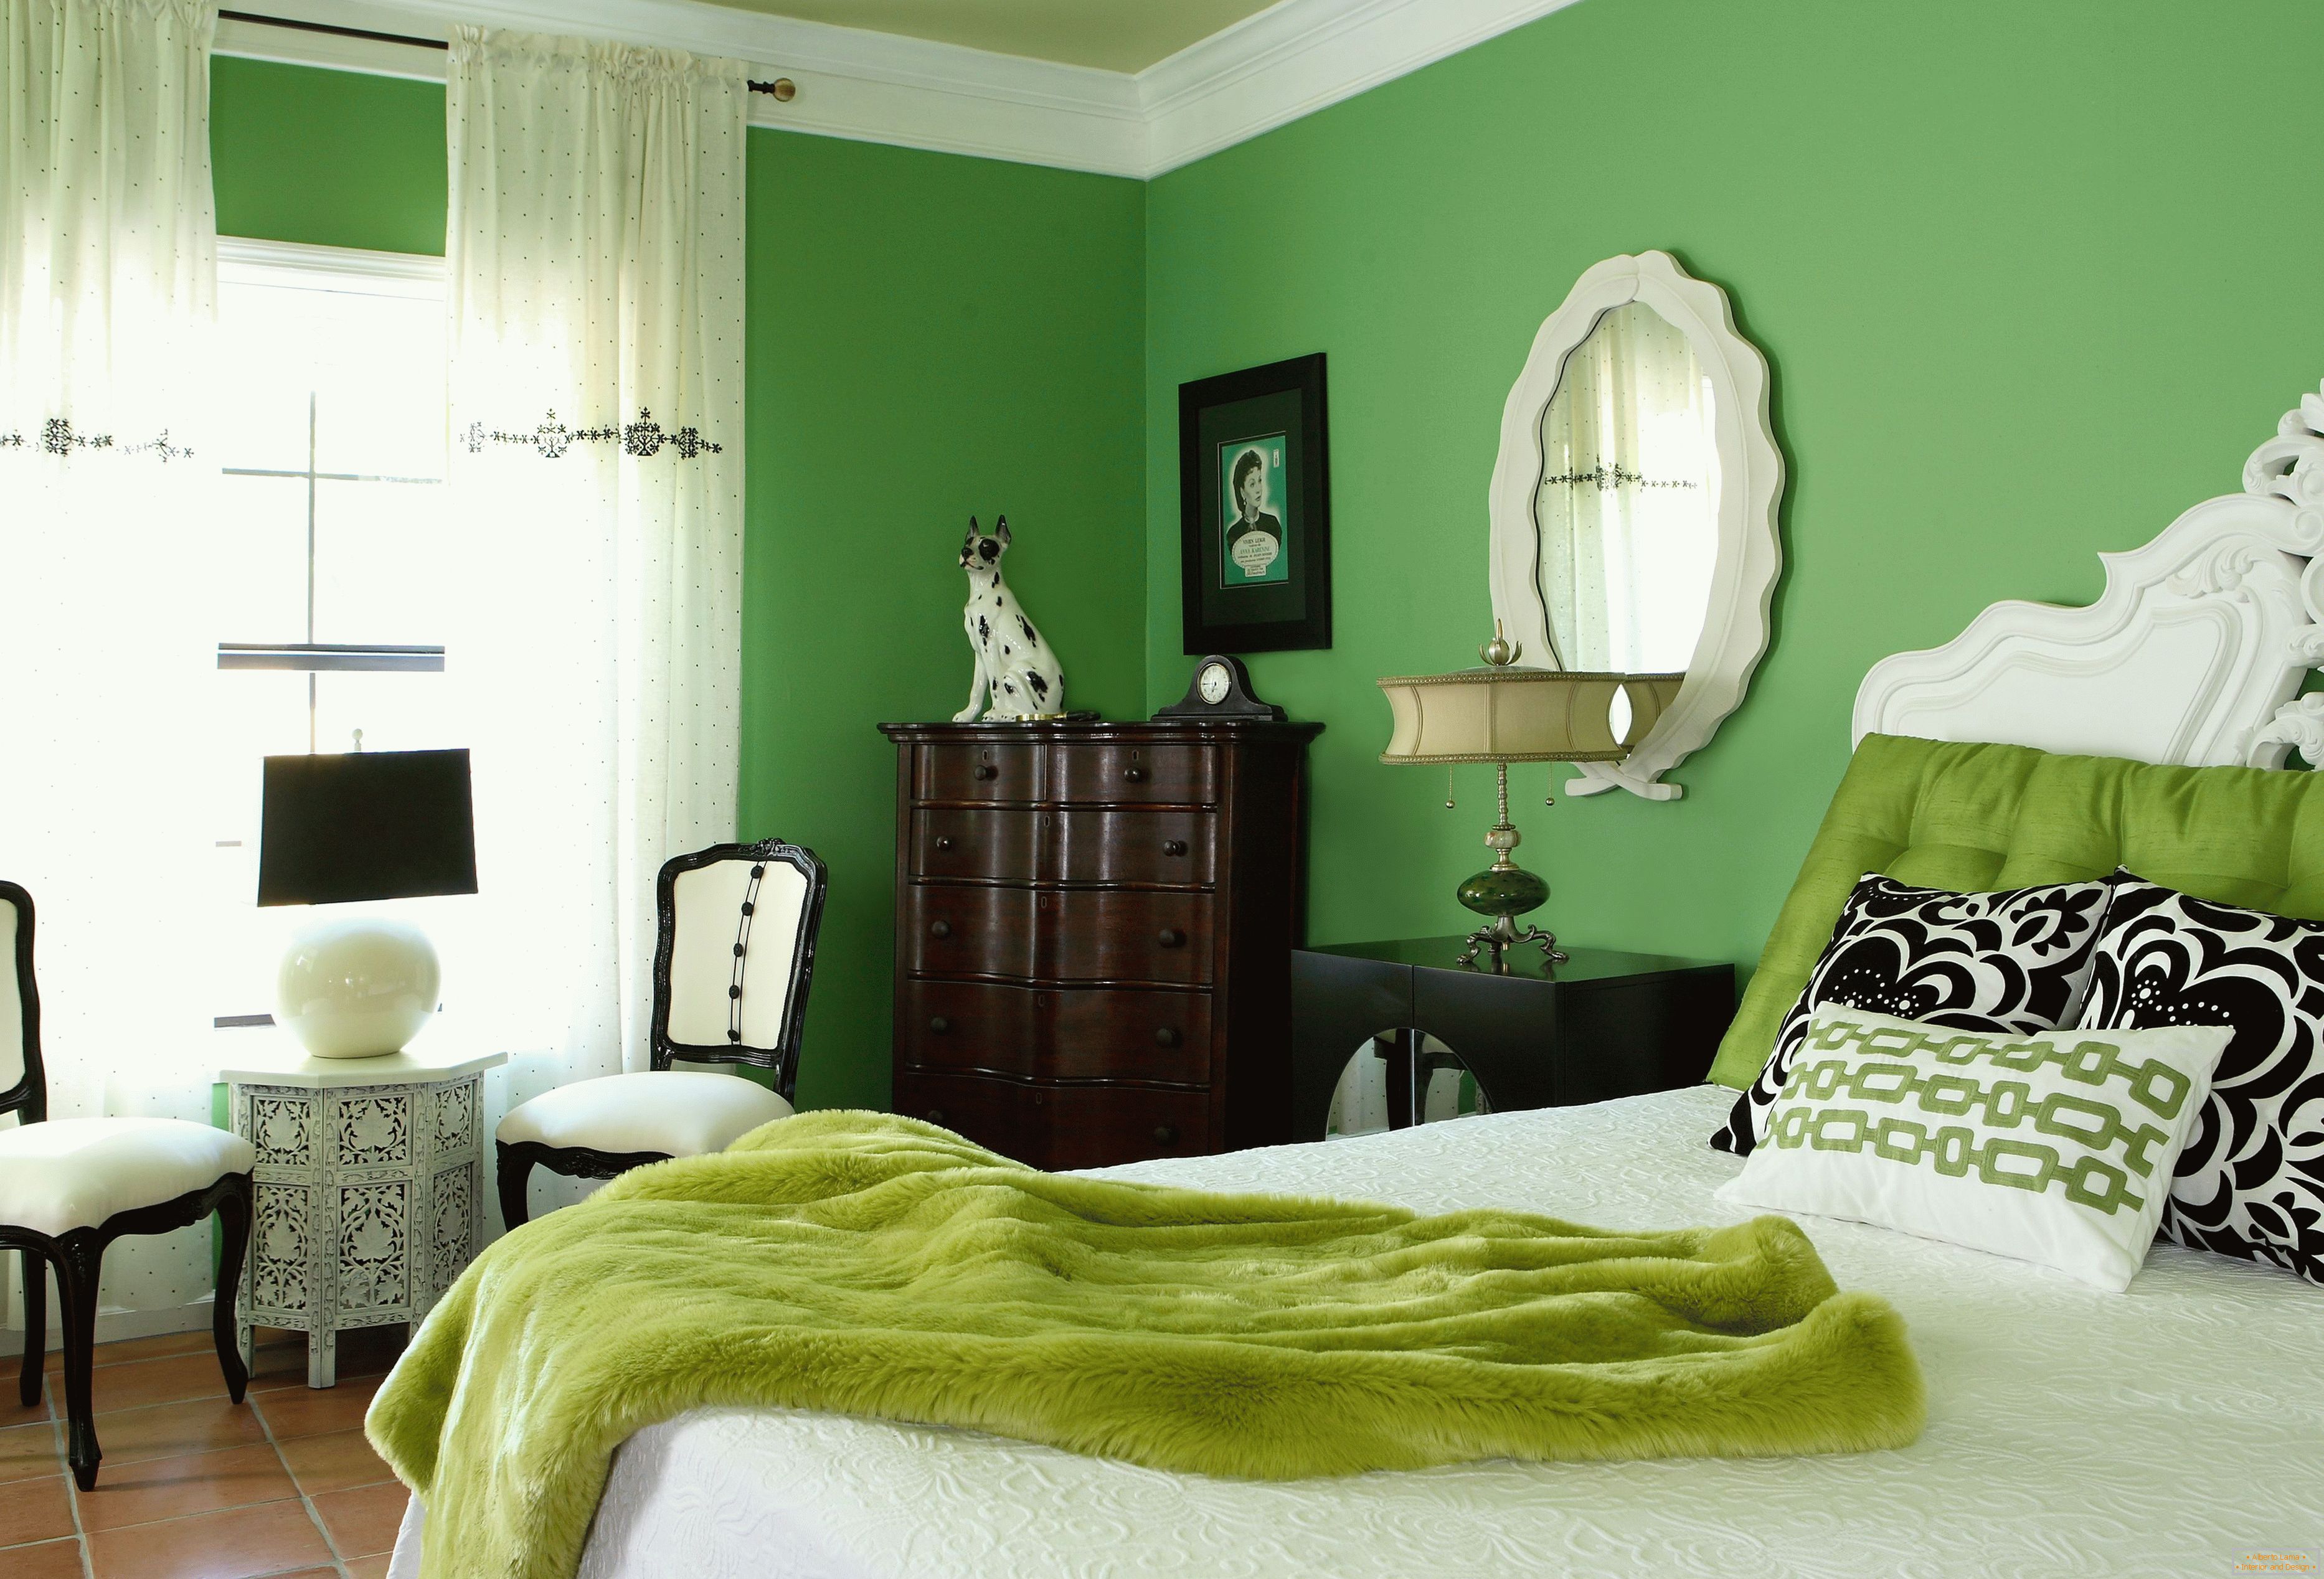 Camera da letto nei colori verdi